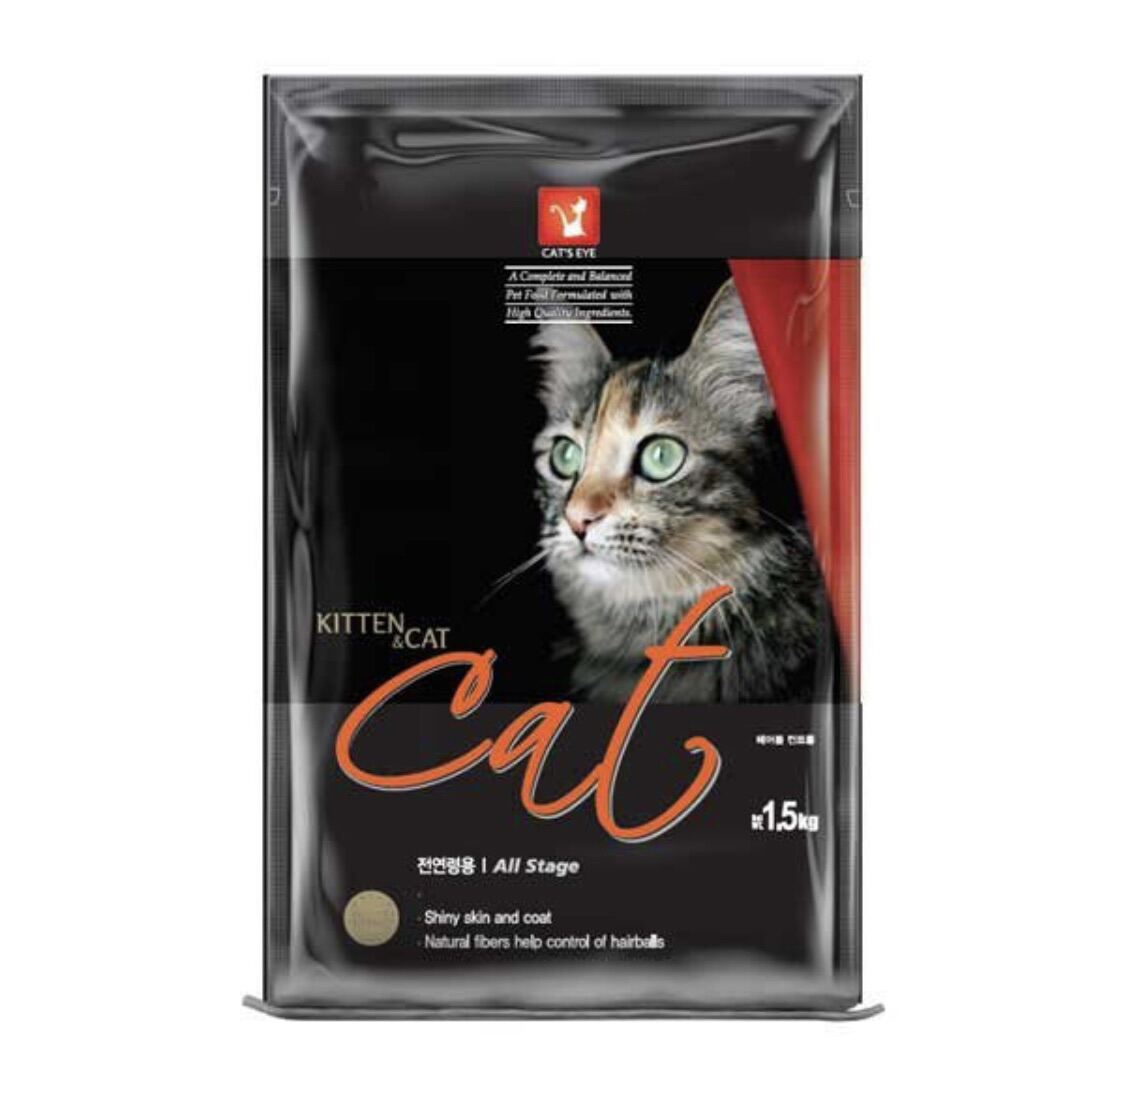 Hạt cateye túi chiết 1kg cho mèo cưng - ảnh sản phẩm 1